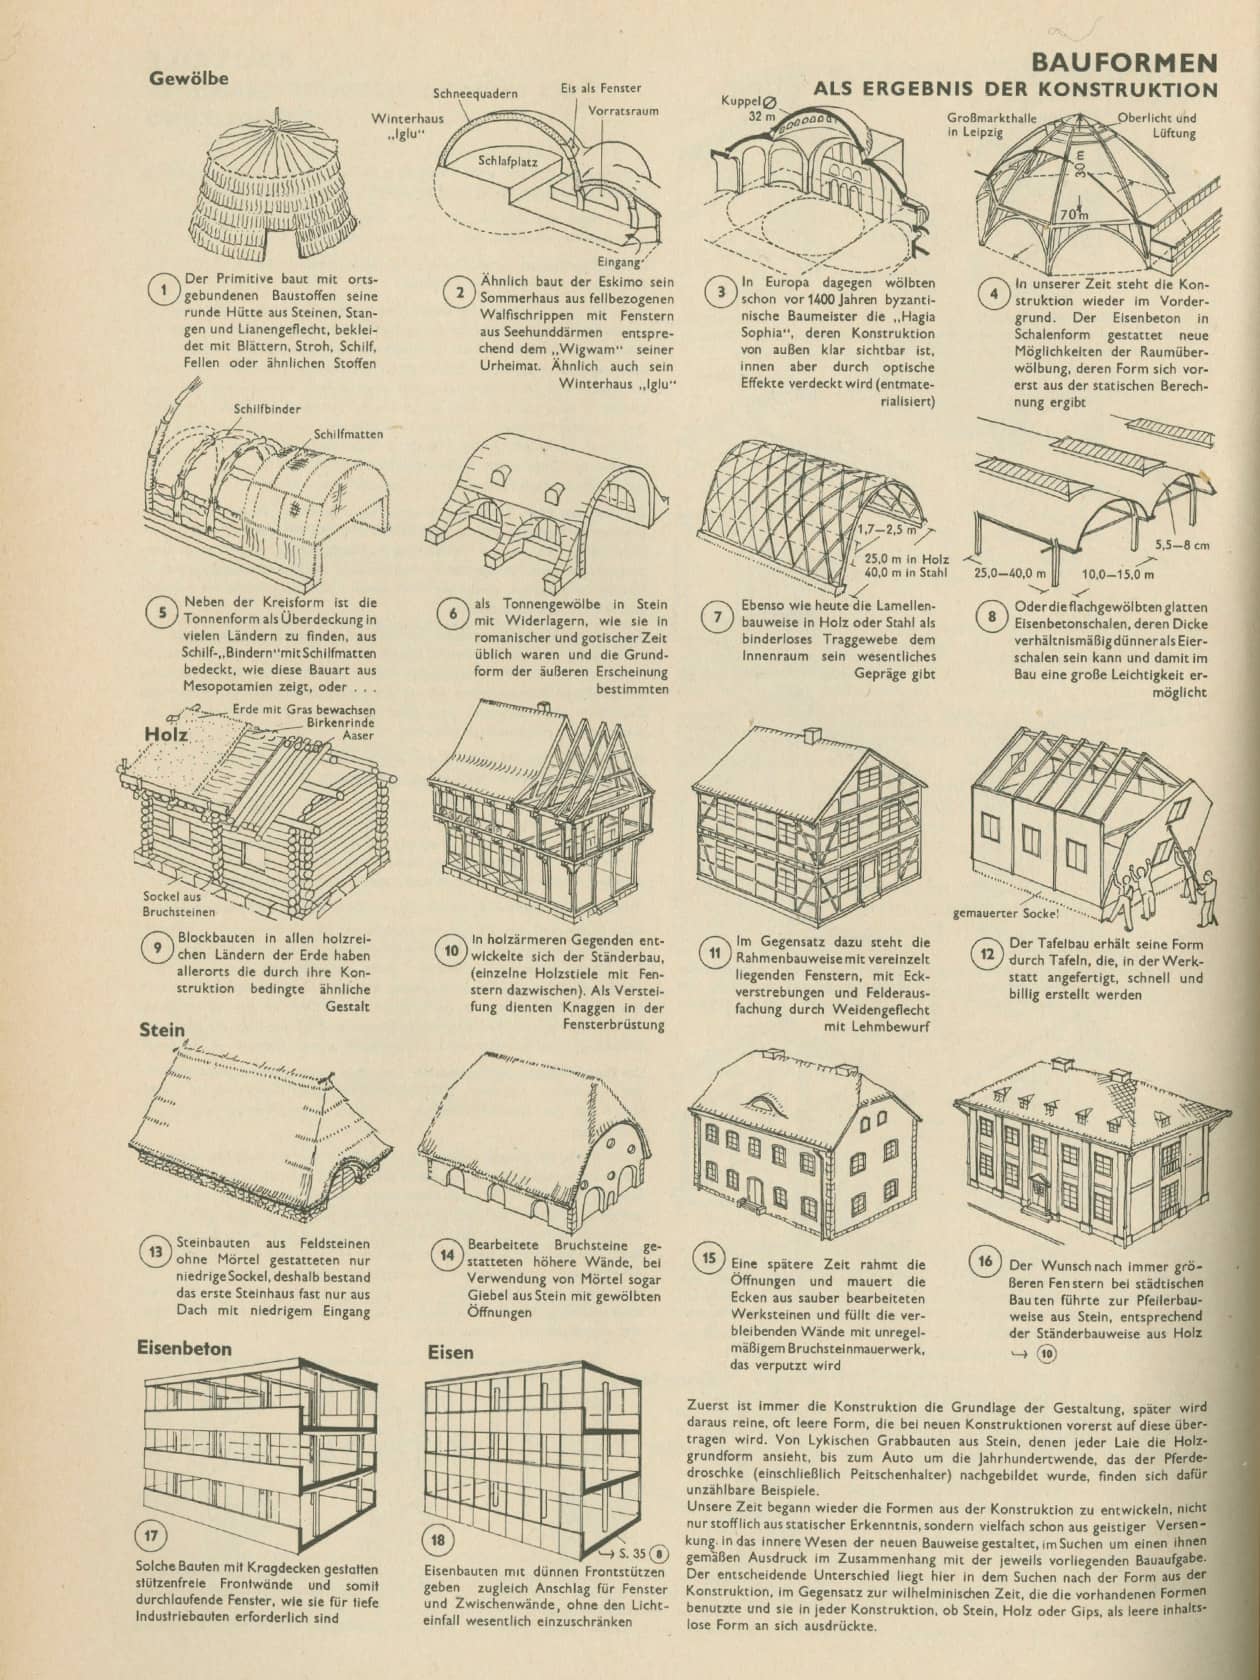 Erste Ausgabe der Bauentwurfslehre von Ernst Neufert, 1936,  “Bauformen”